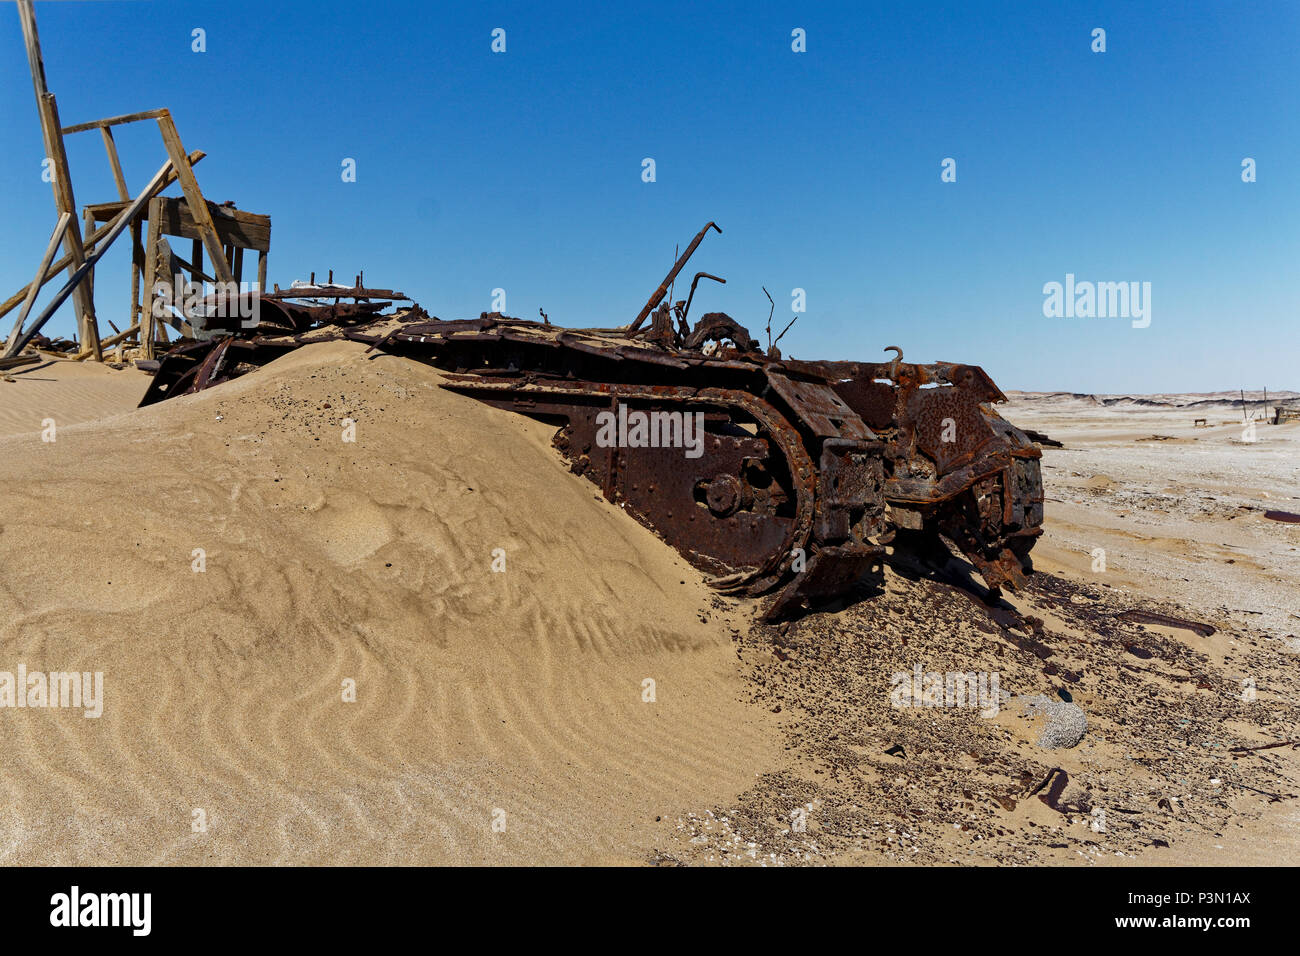 Namibia abandoned diamon mines Stock Photo